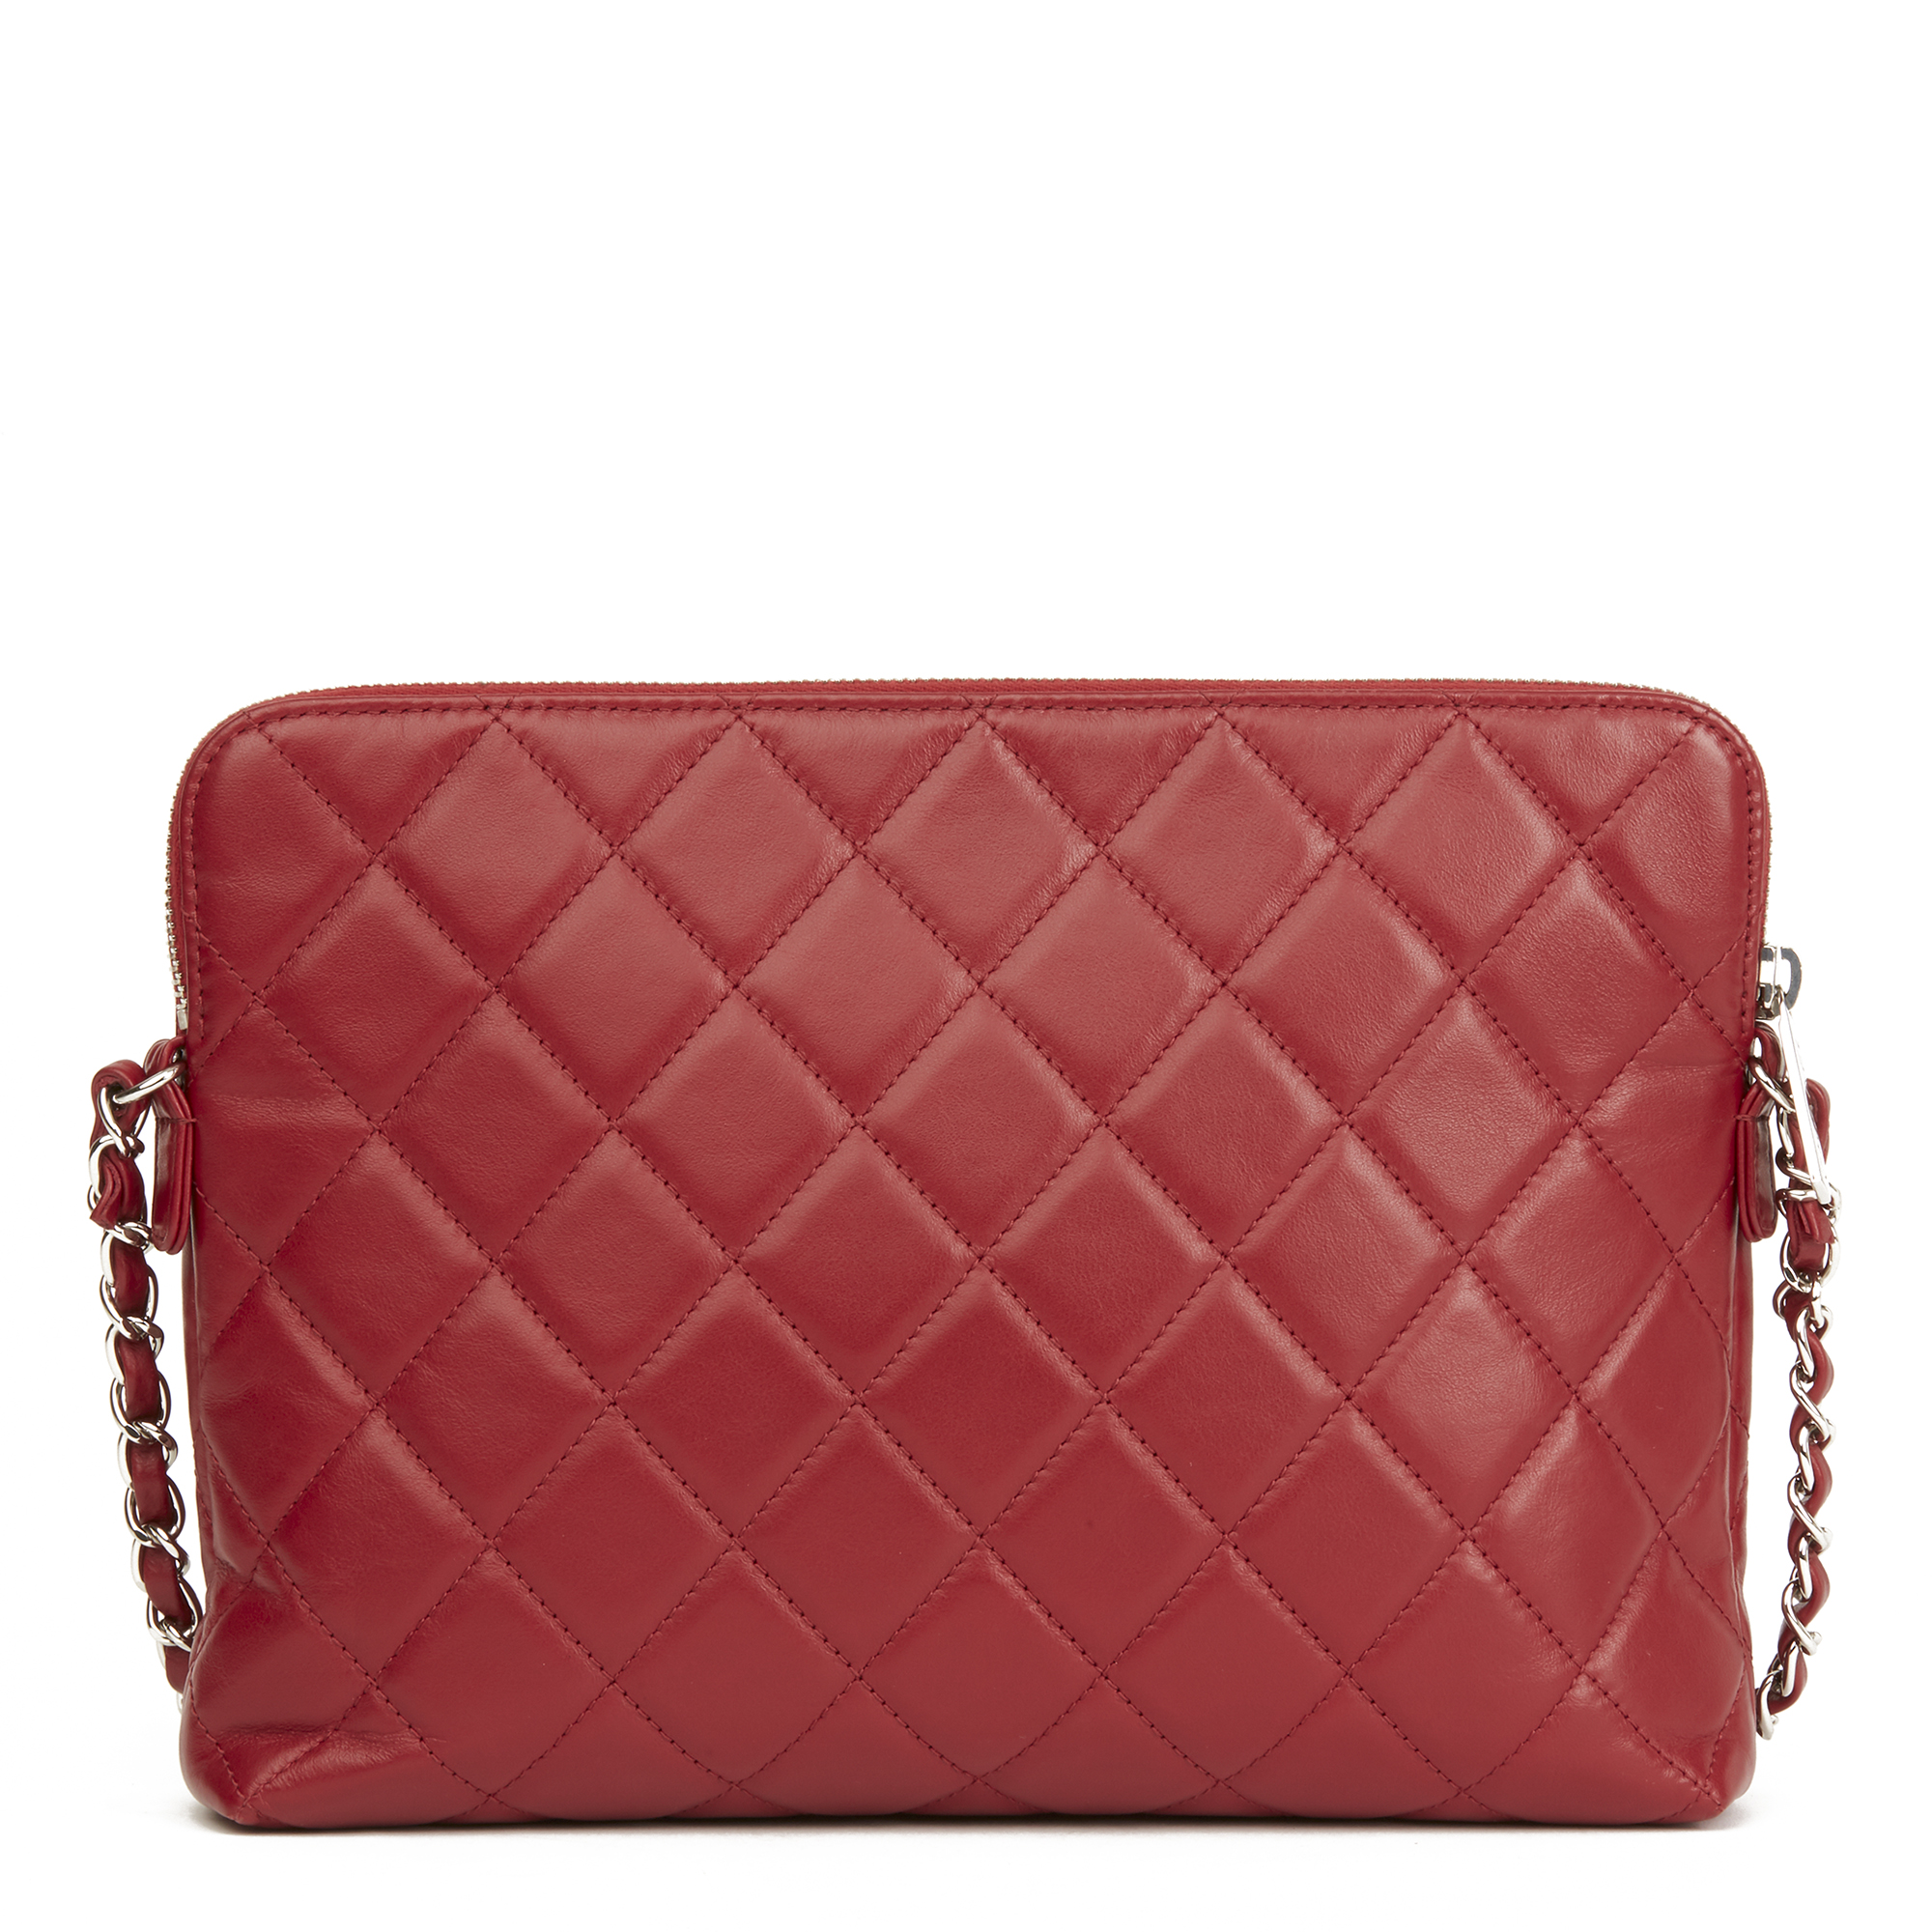 Chanel Classic Shoulder Bag - Image 5 of 7